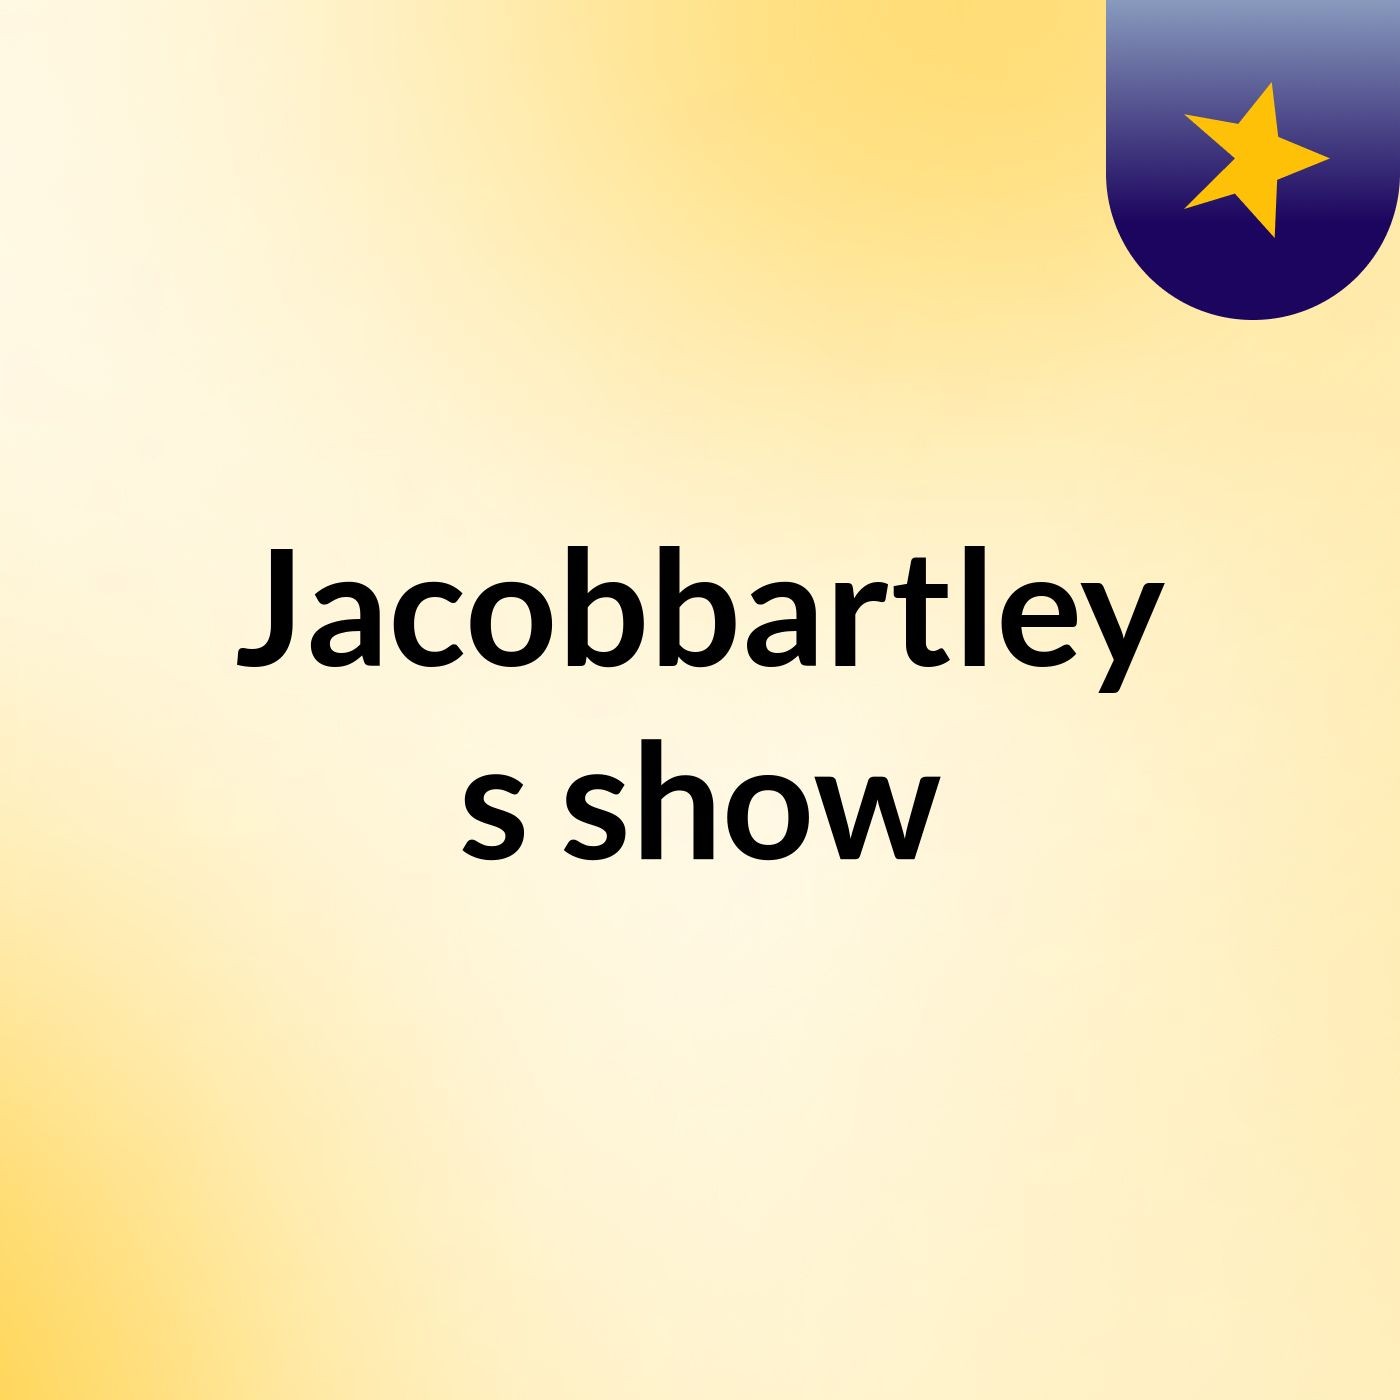 Episode 21 - Jacobbartley's show